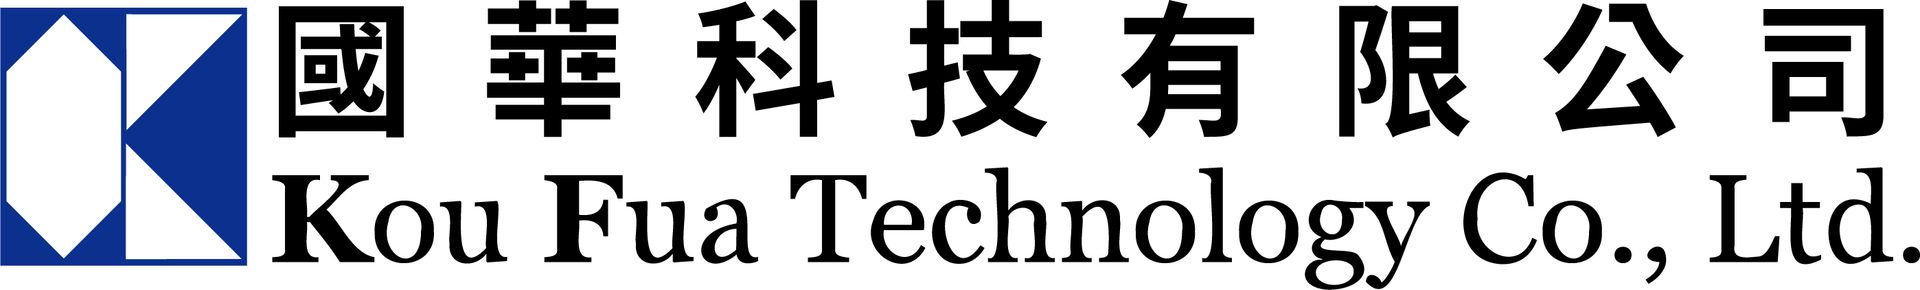 國華科技有限公司Logo